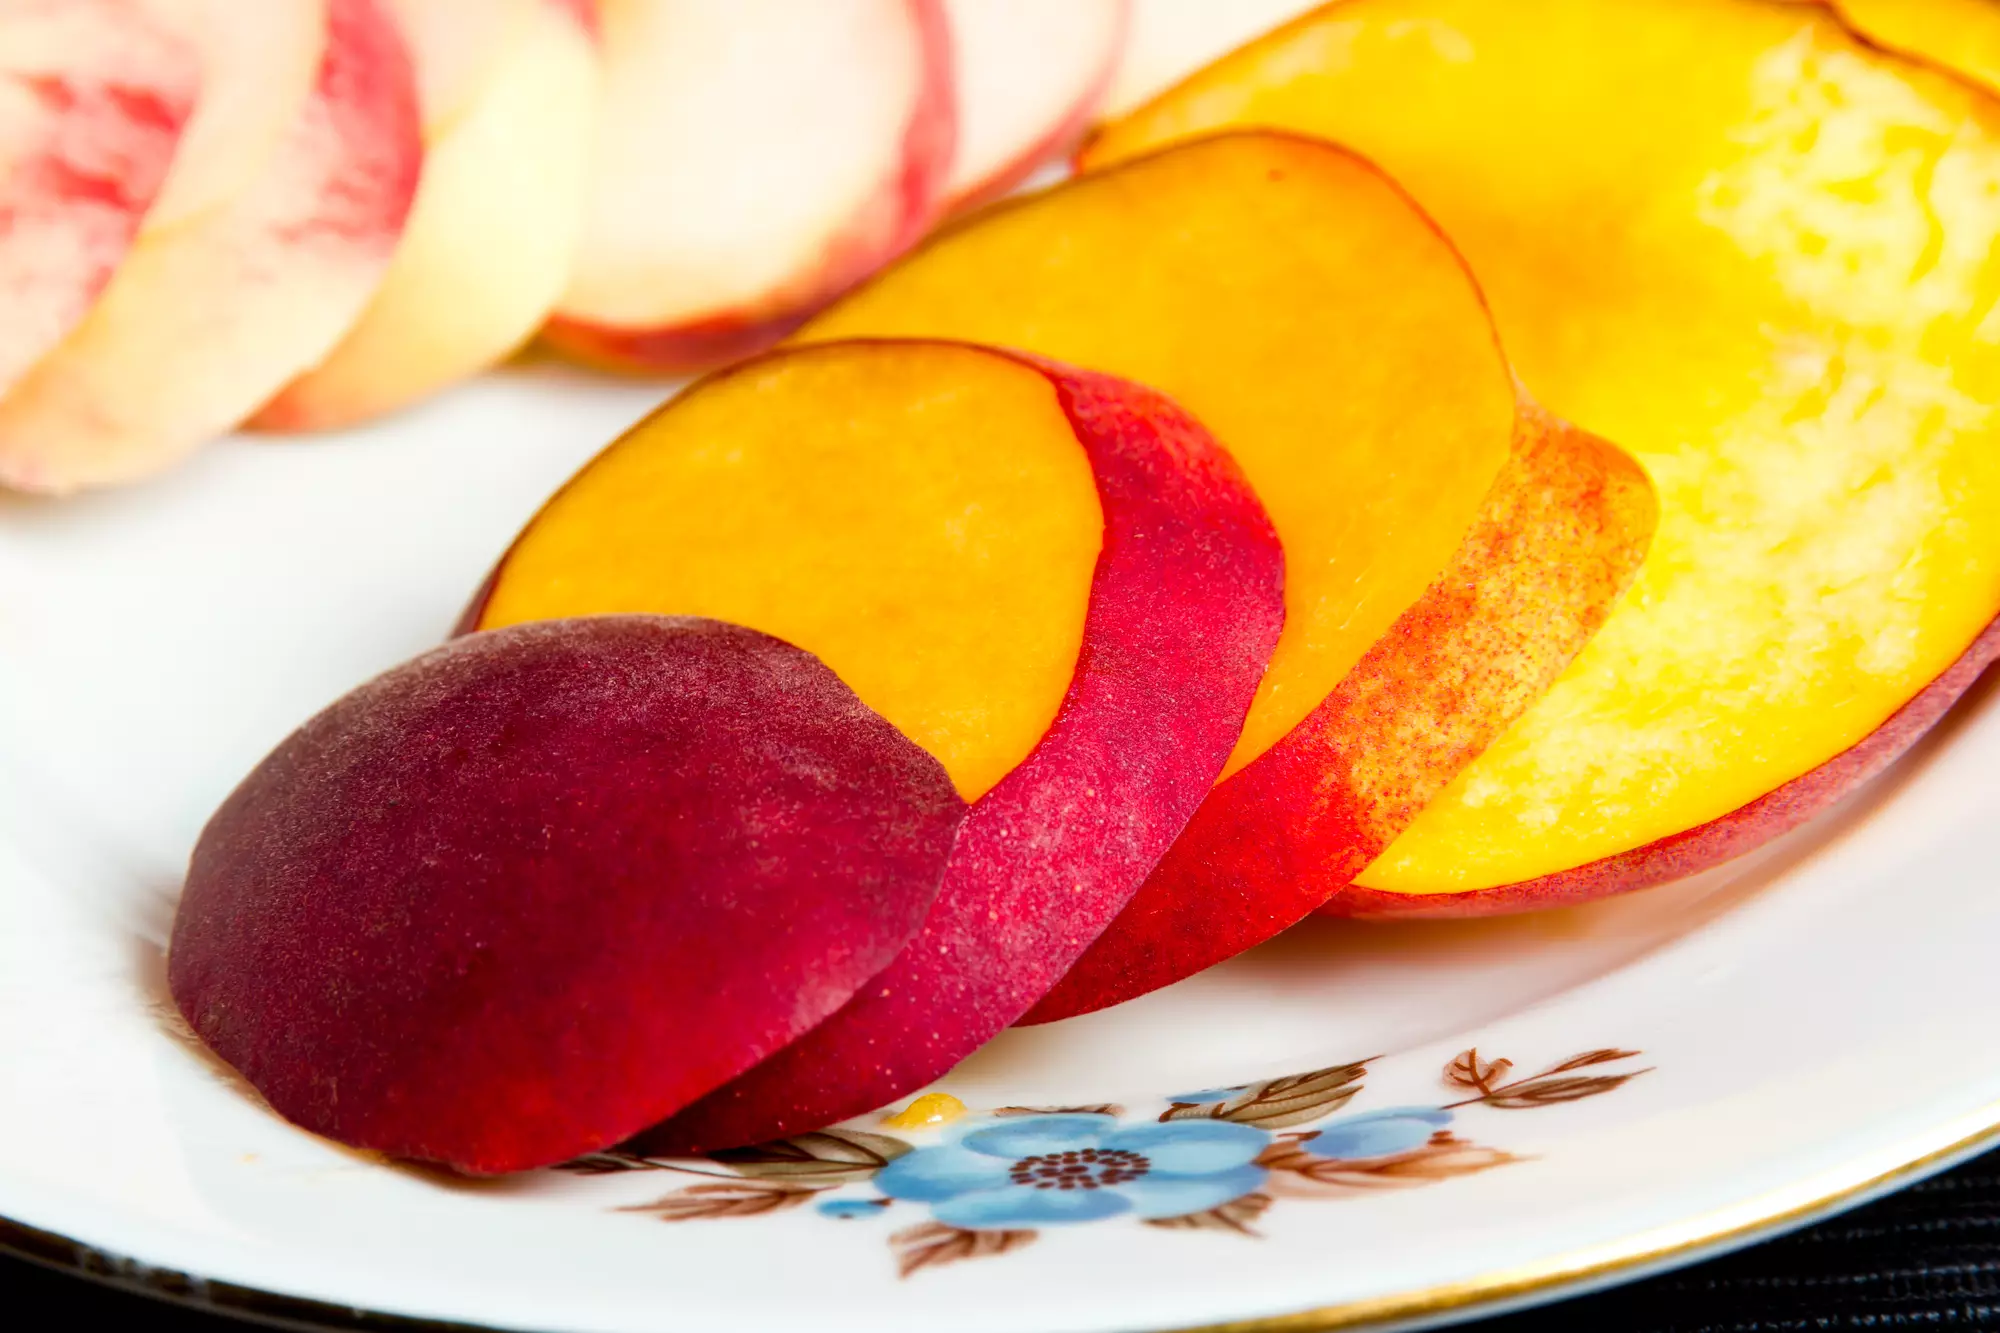 Один персик обеспечивает организму ¾ дневной нормы витамина С